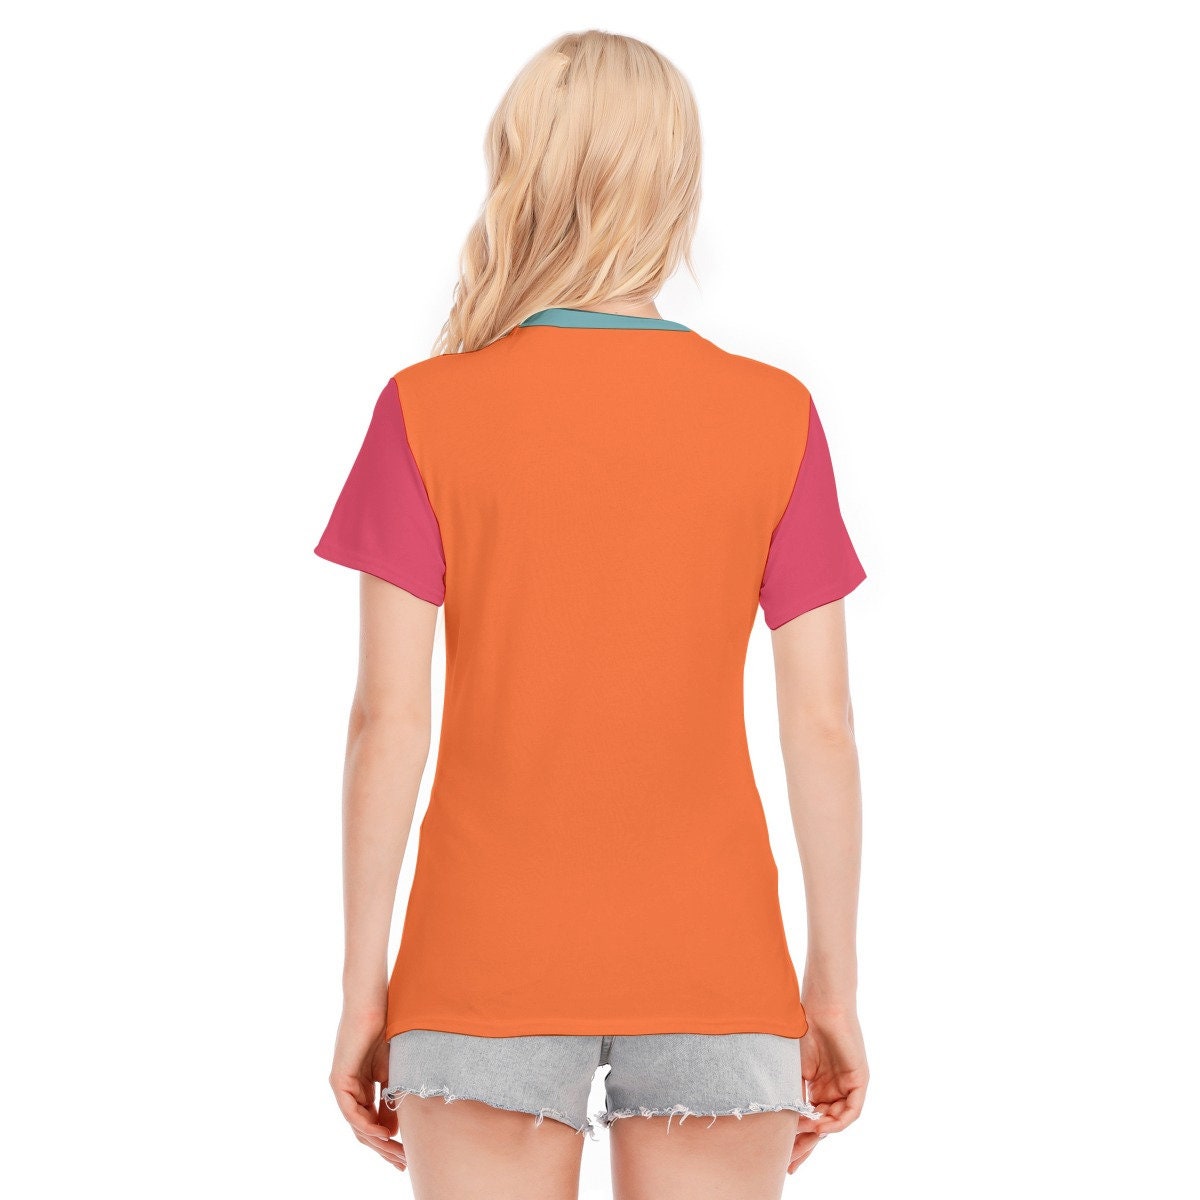 Retro-T-Shirt, T-Shirts mit Worten, Vintage-T-Shirt mit Worten, orangefarbenes T-Shirt mit Worten, Hippie-T-Shirt für Damen, orangefarbenes T-Shirt im Vintage-Stil, einzigartiges T-Shirt